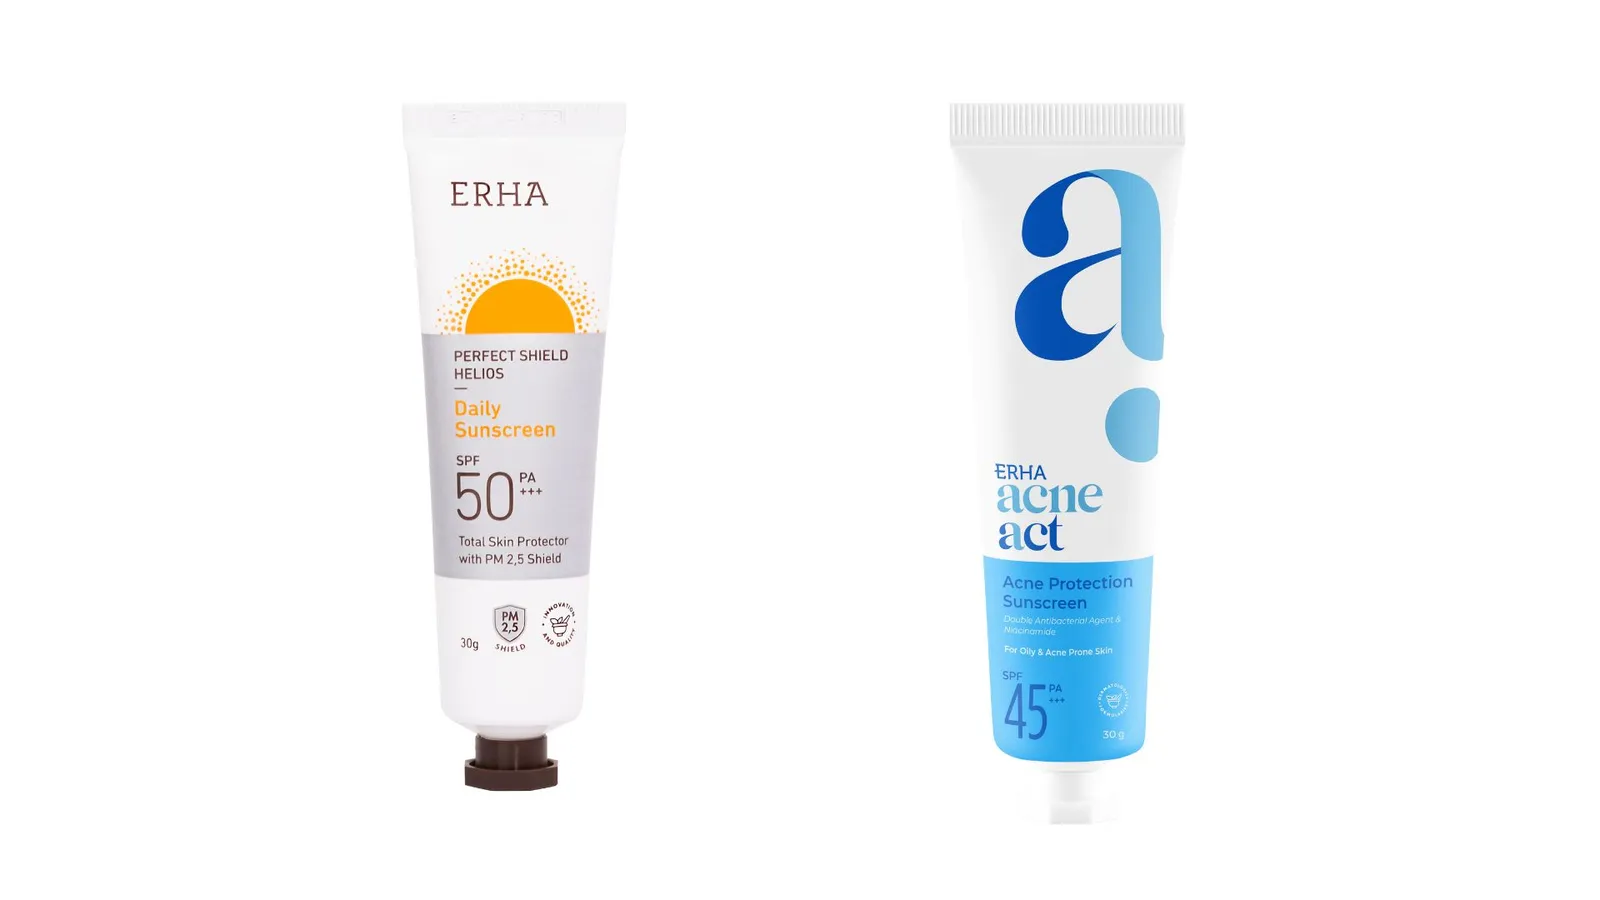 Produk Skincare ERHA Dipastikan Aman dan Efektif